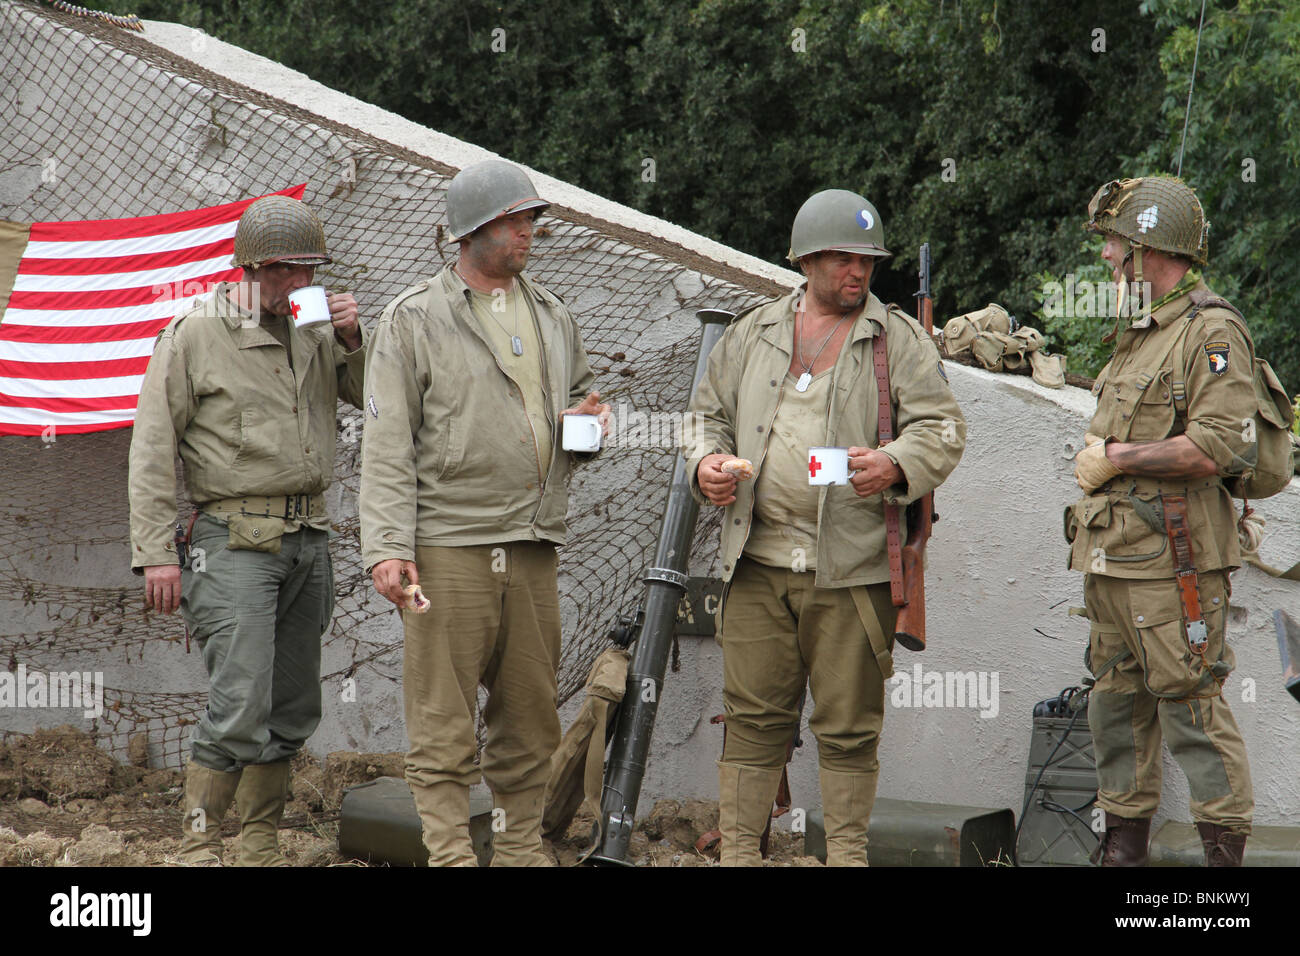 Les soldats américains ayant une pause thé et à l'aise. Ils sont faisant revivre une seconde guerre mondiale thème. La guerre et la paix montrent, Kent 2010. Banque D'Images